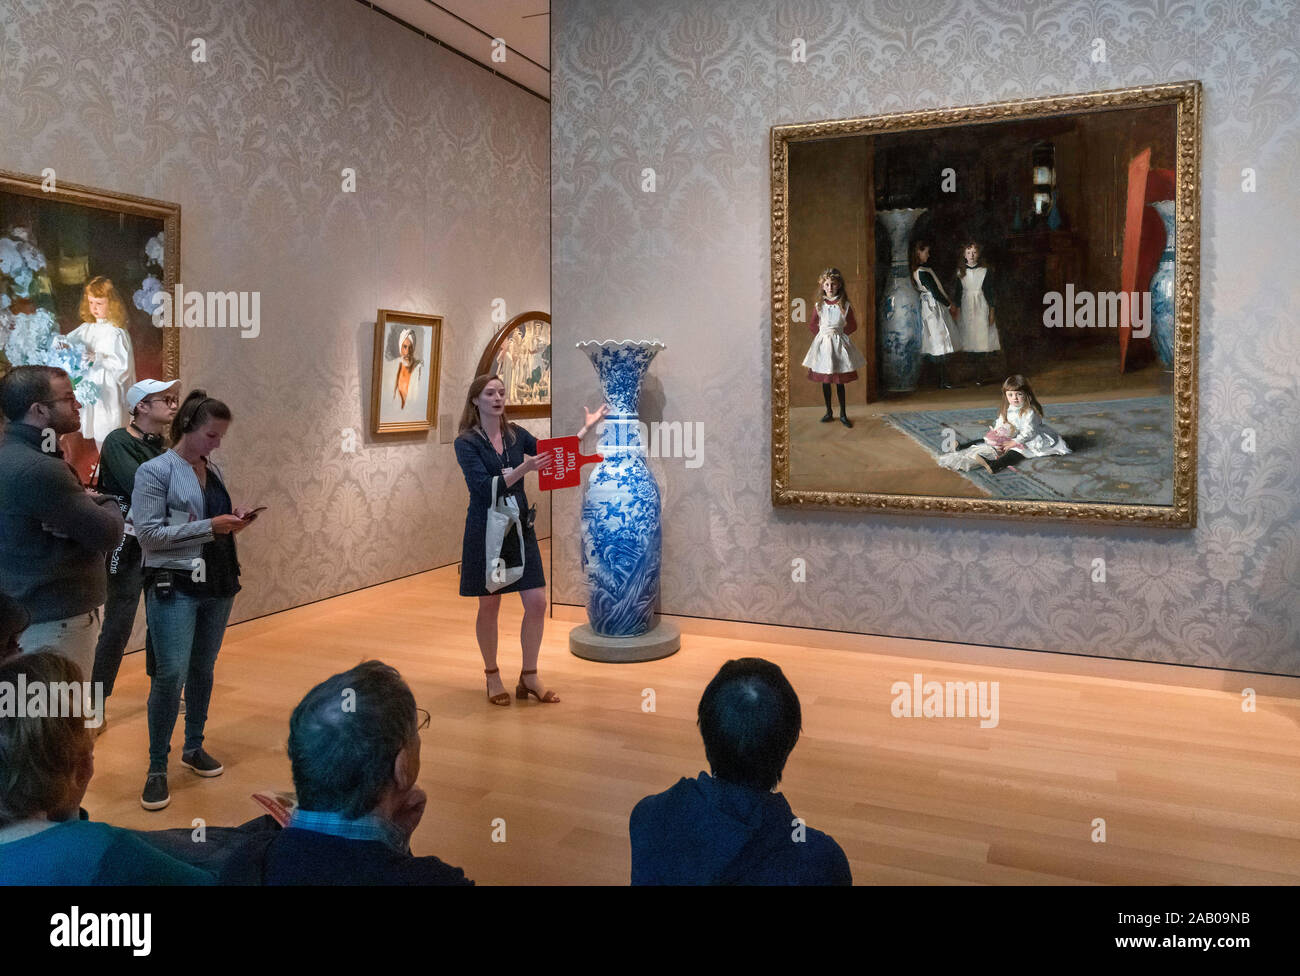 Geführte Tour vor der Töchter von Edward Darley Boit von John Singer Sargent, Museum der Bildenden Künste, Boston, Massachusetts, USA Stockfoto